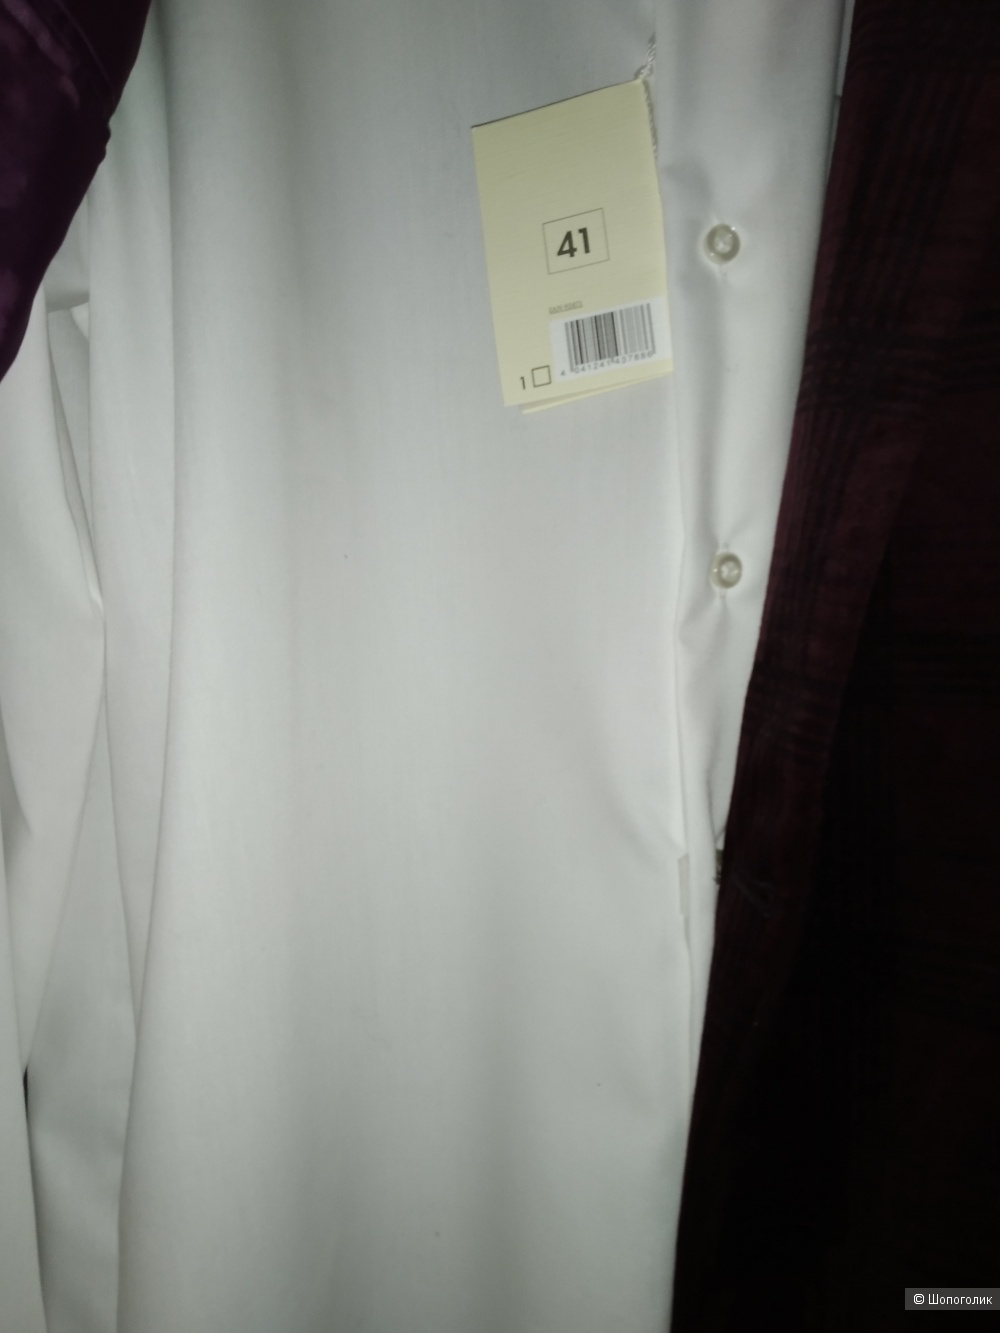 Сет пиджак Angelo Litrico и рубашка Nobel league размер 52/54